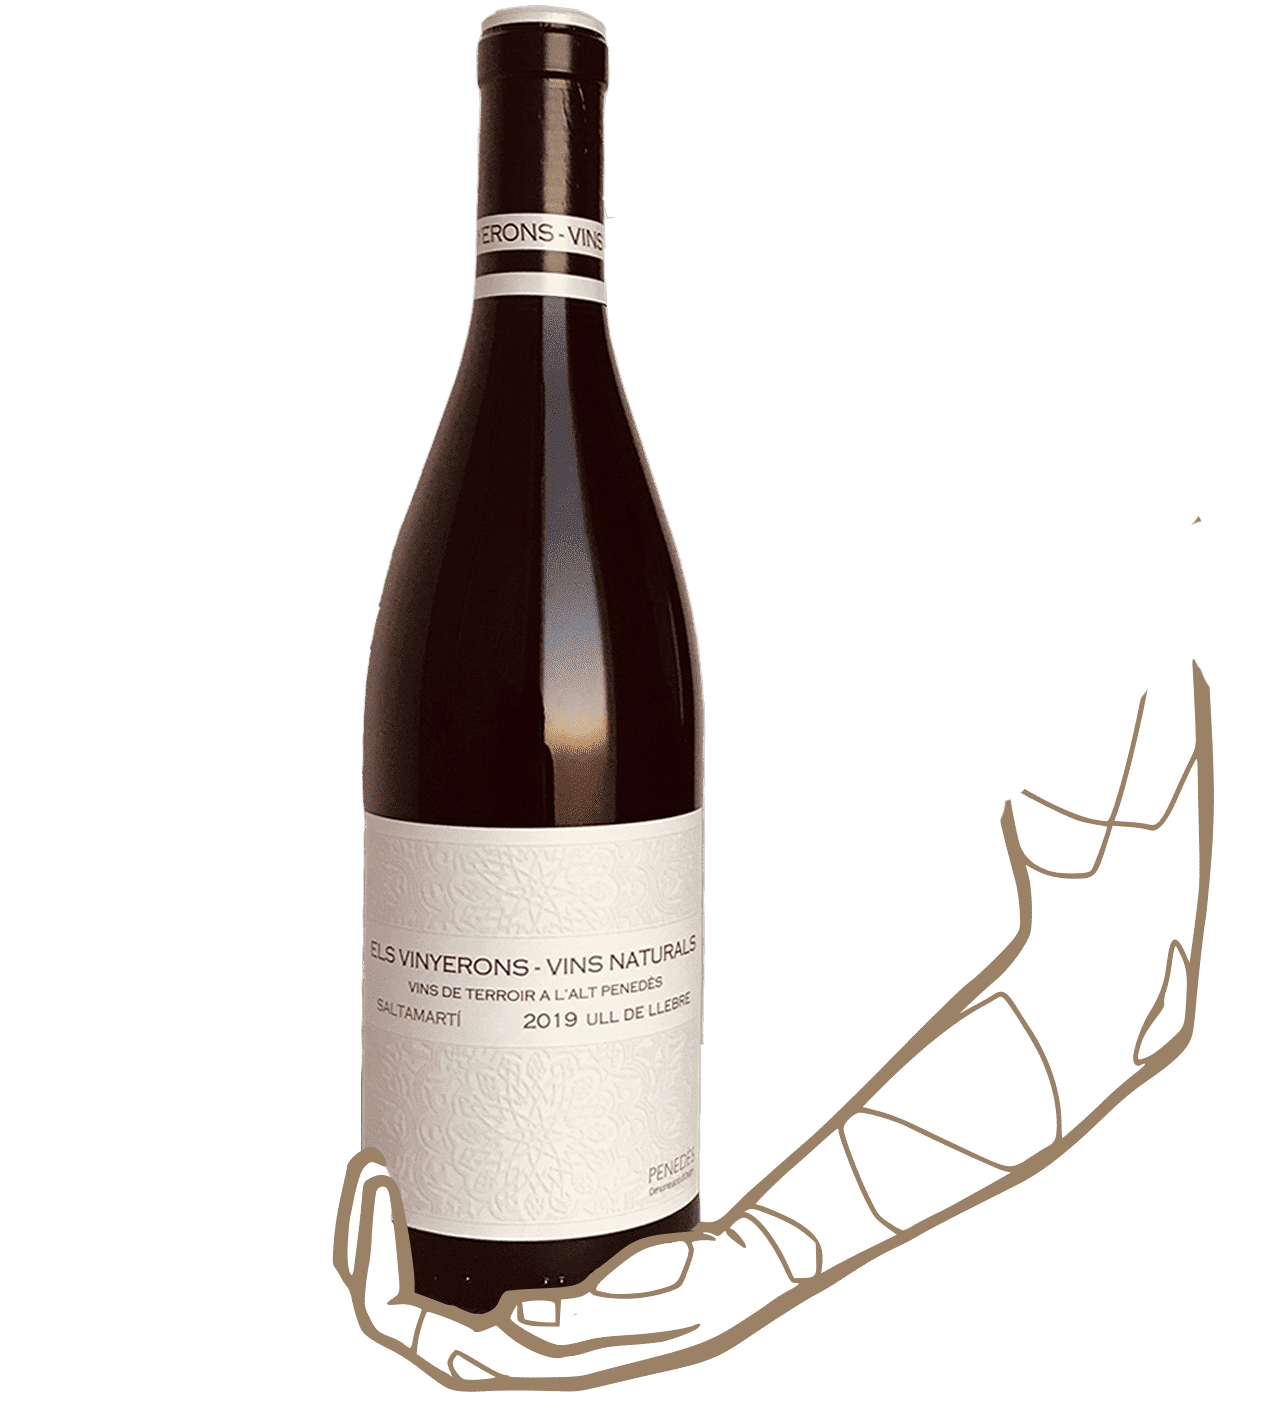 Saltamarti d'Els vinyerons est un vin naturel sans sulfite ajouté du penedès